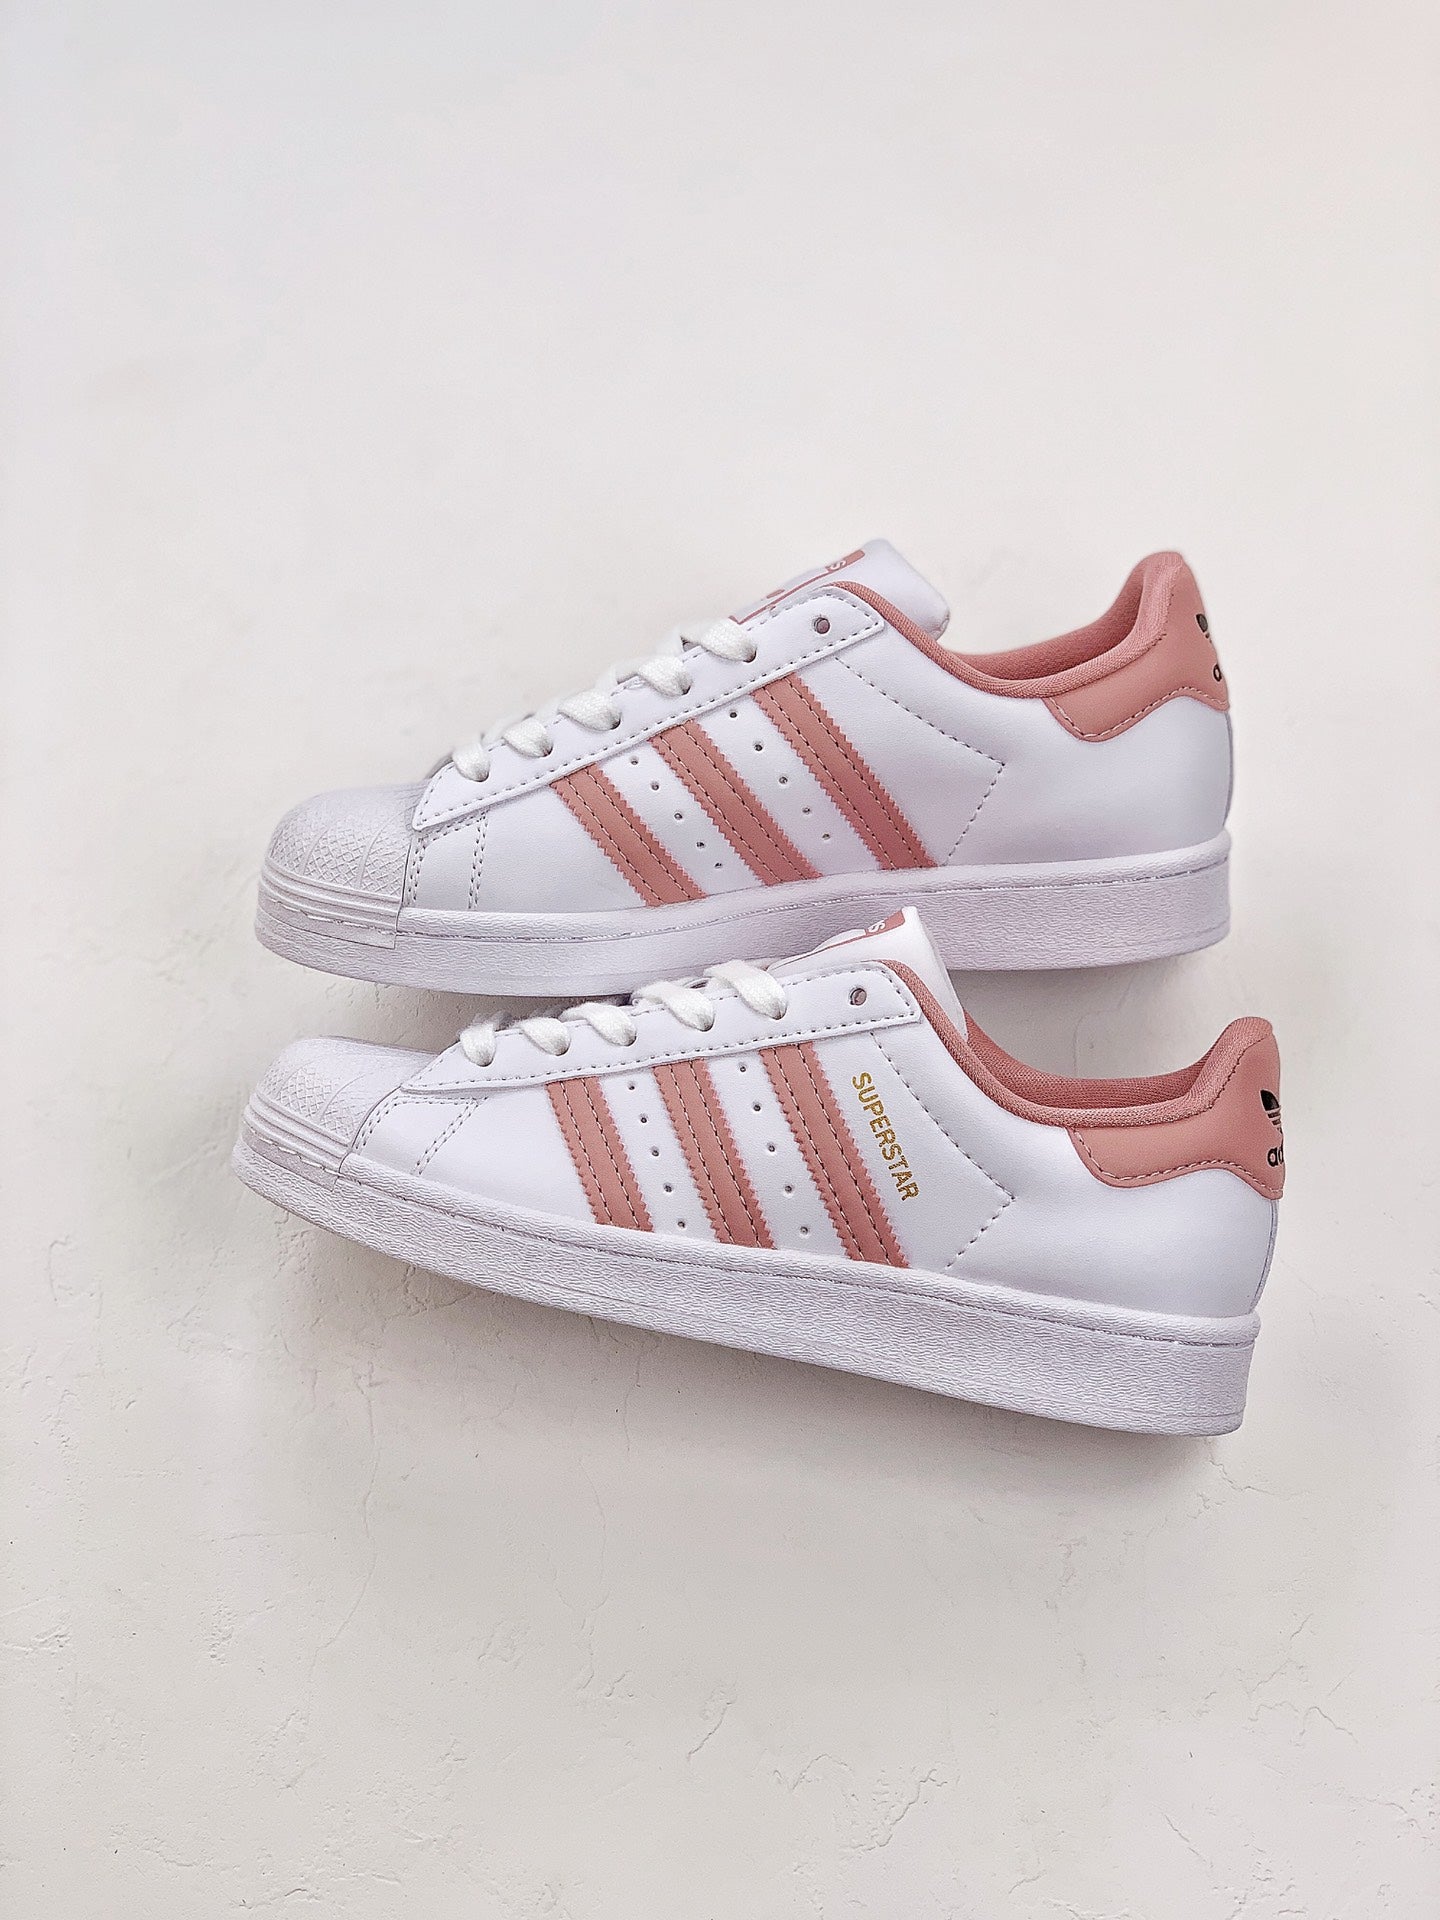 Adidas superstar white pink